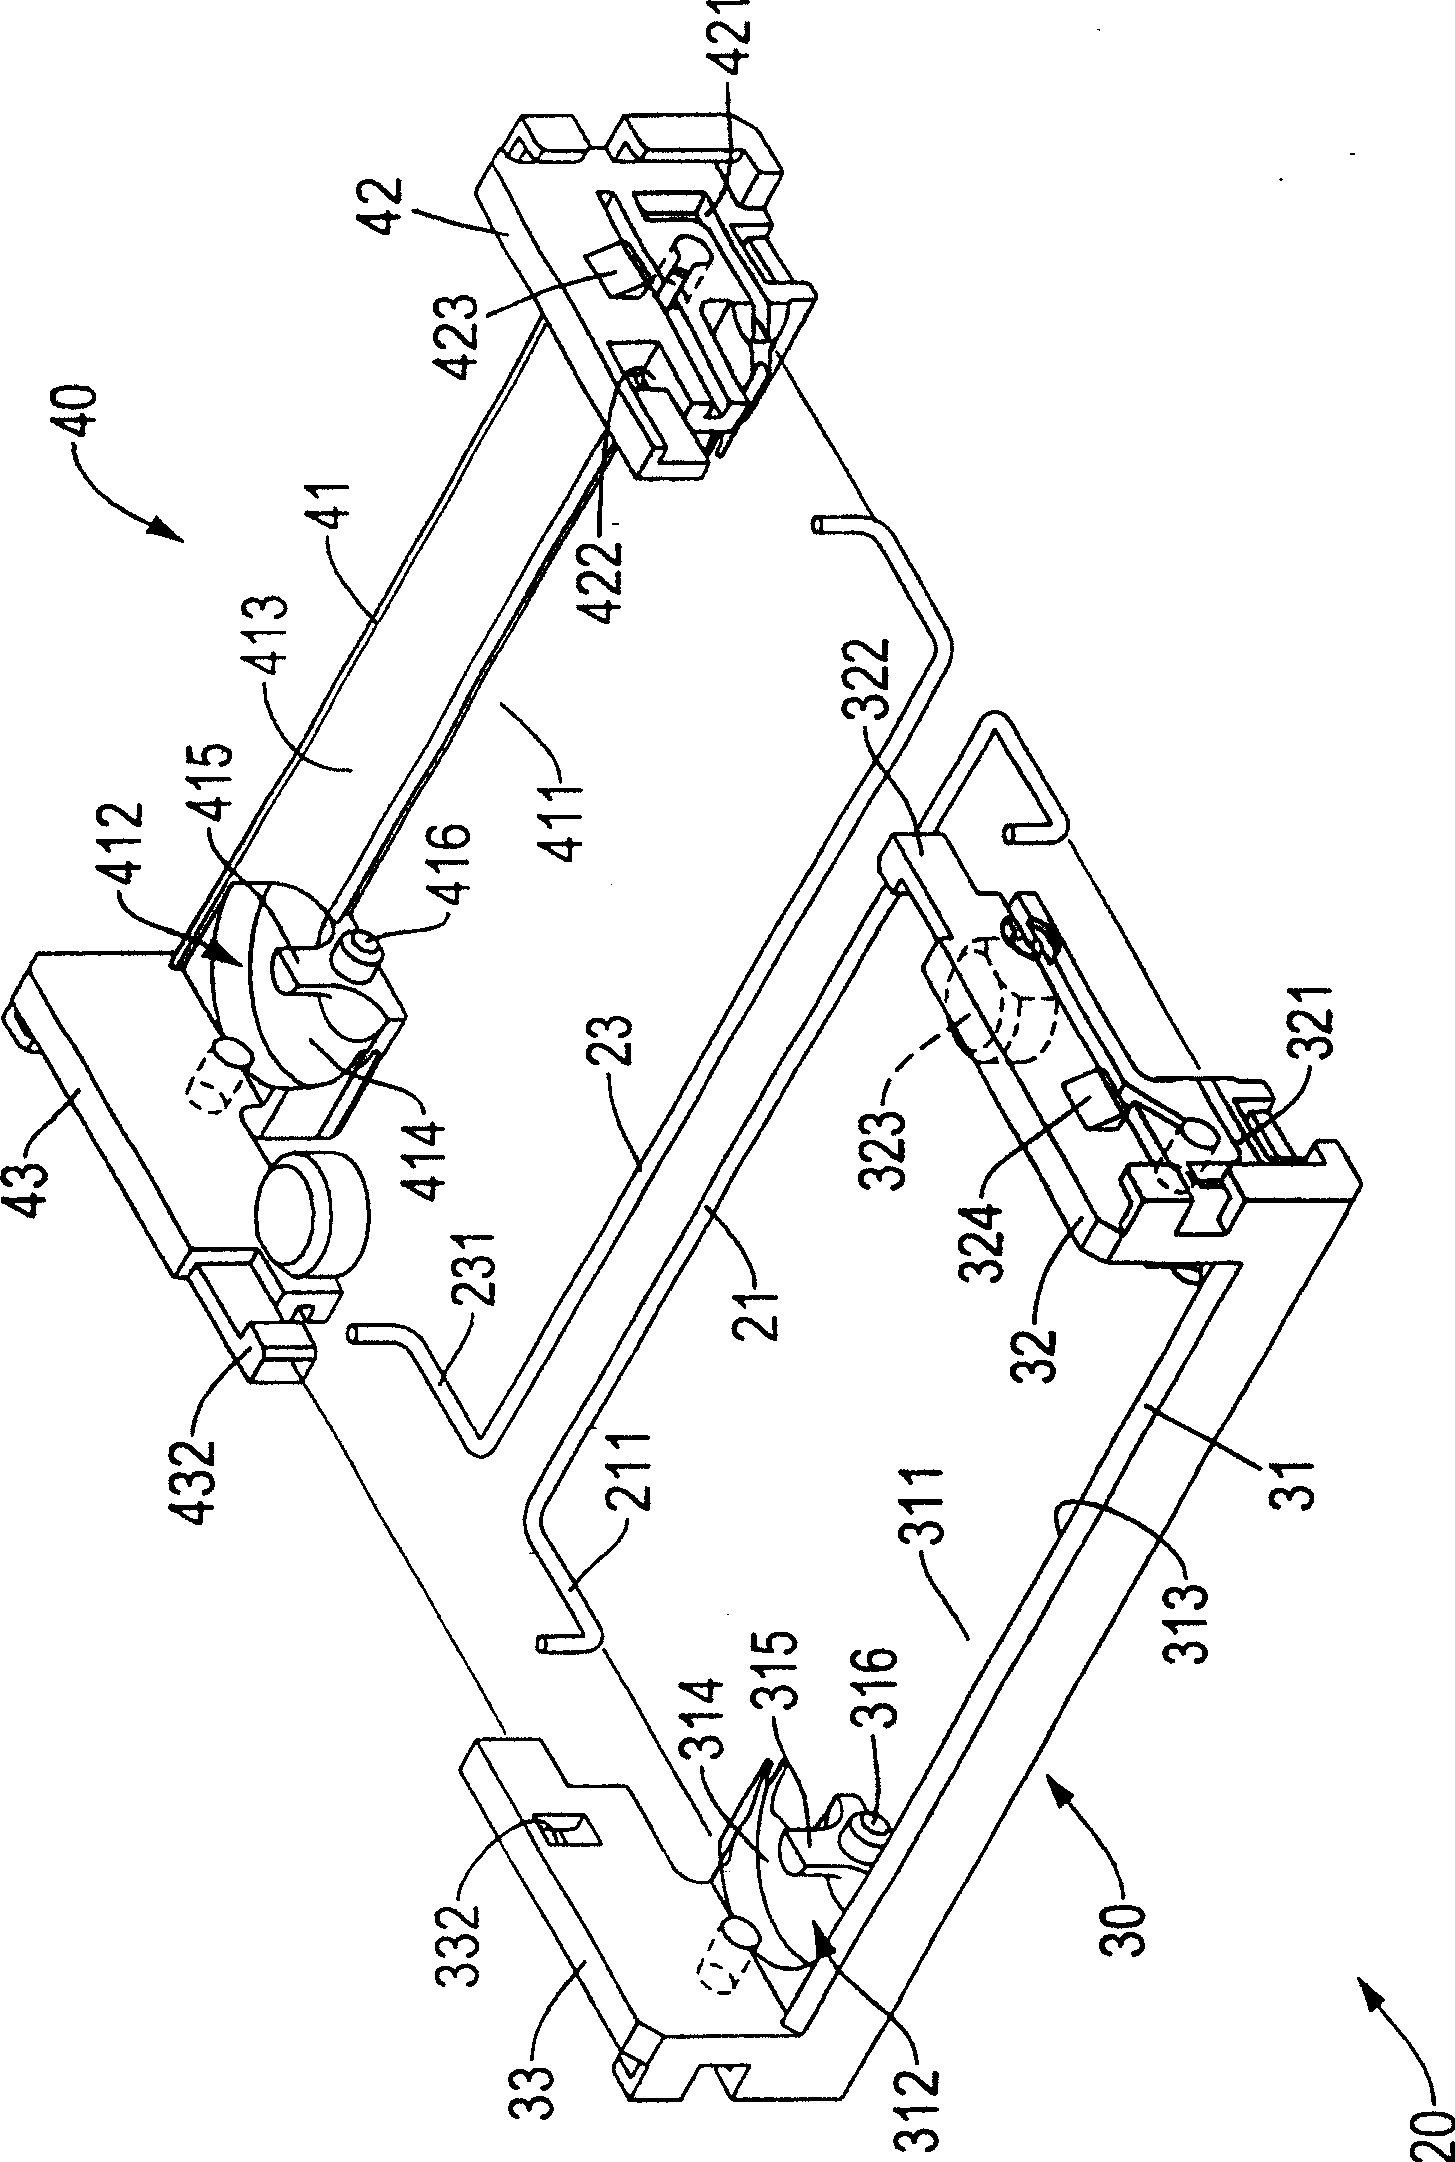 Slide block device of linear sliding rail